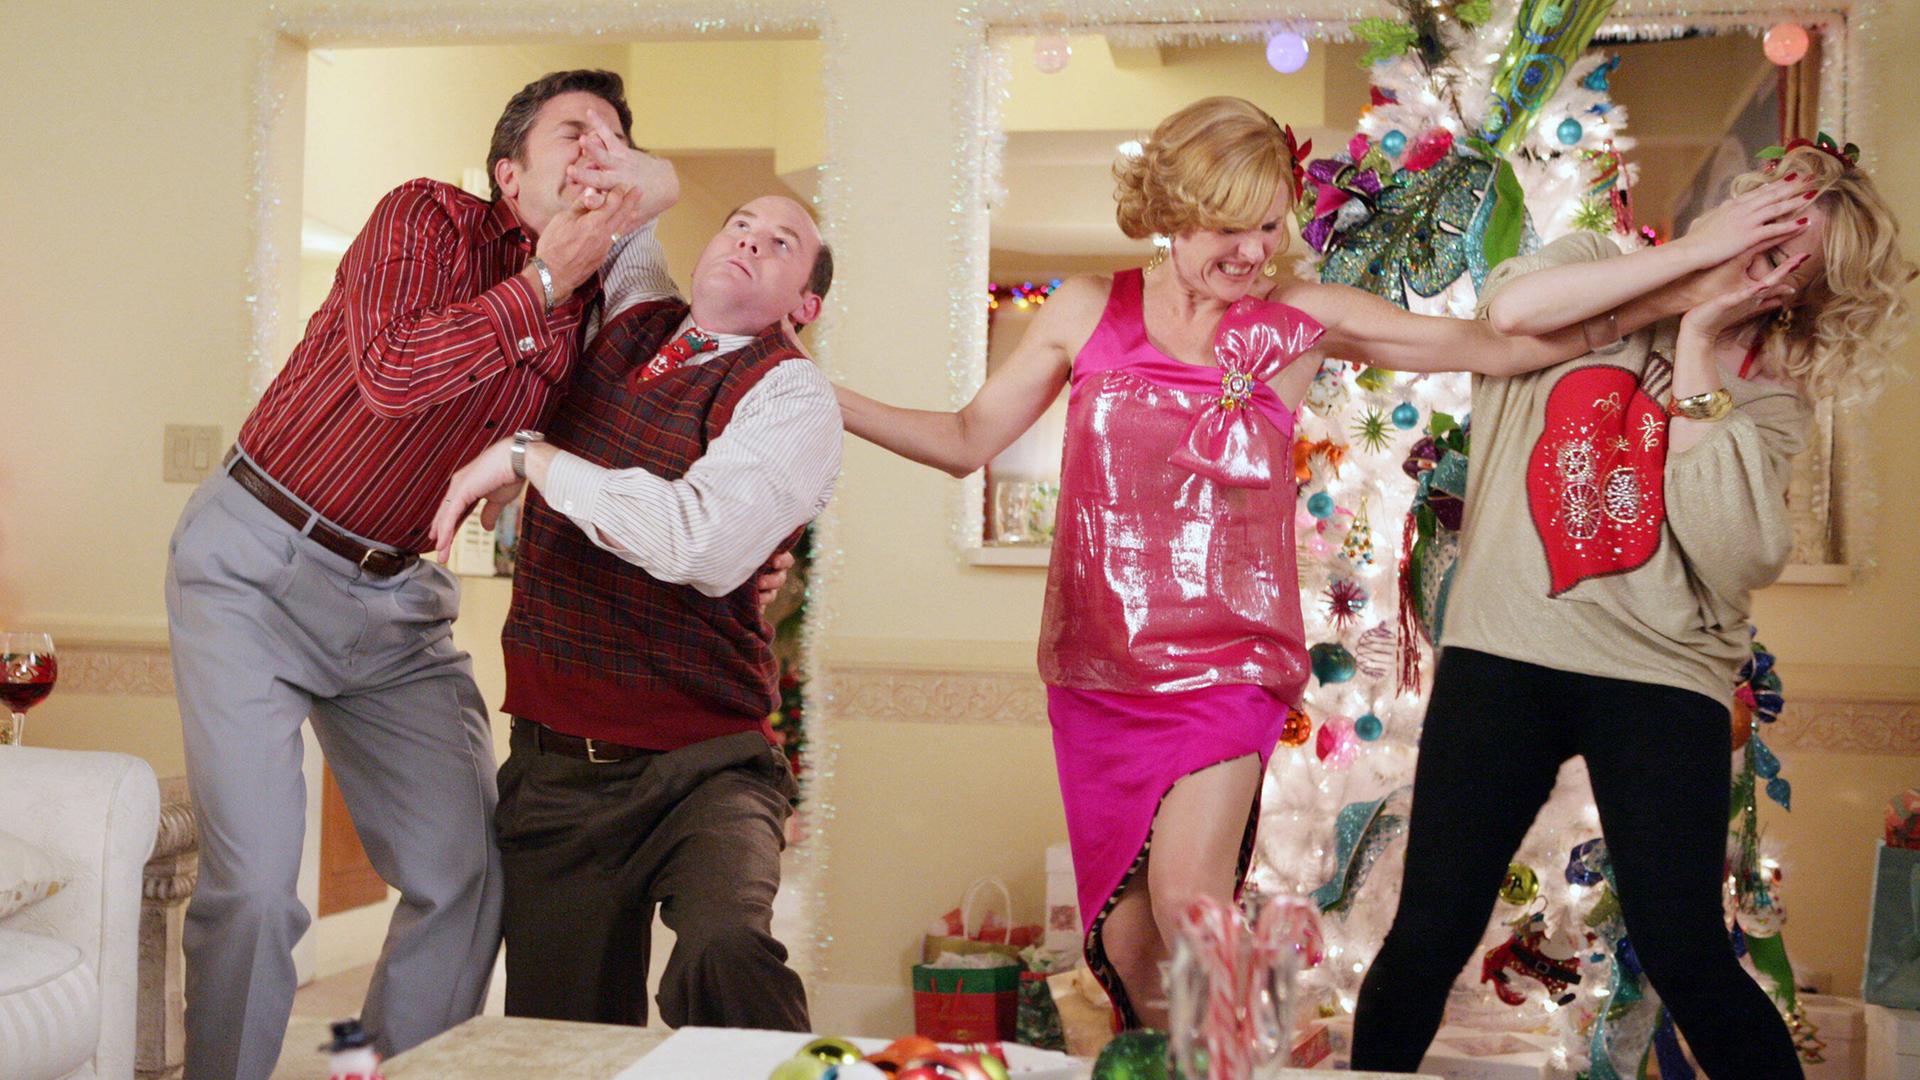 Szene aus der Sitcom "Kath and Kim": Zwei Männer und zwei Frauen streiten sich handgreiflich unter einem Weihnachtsbaum.